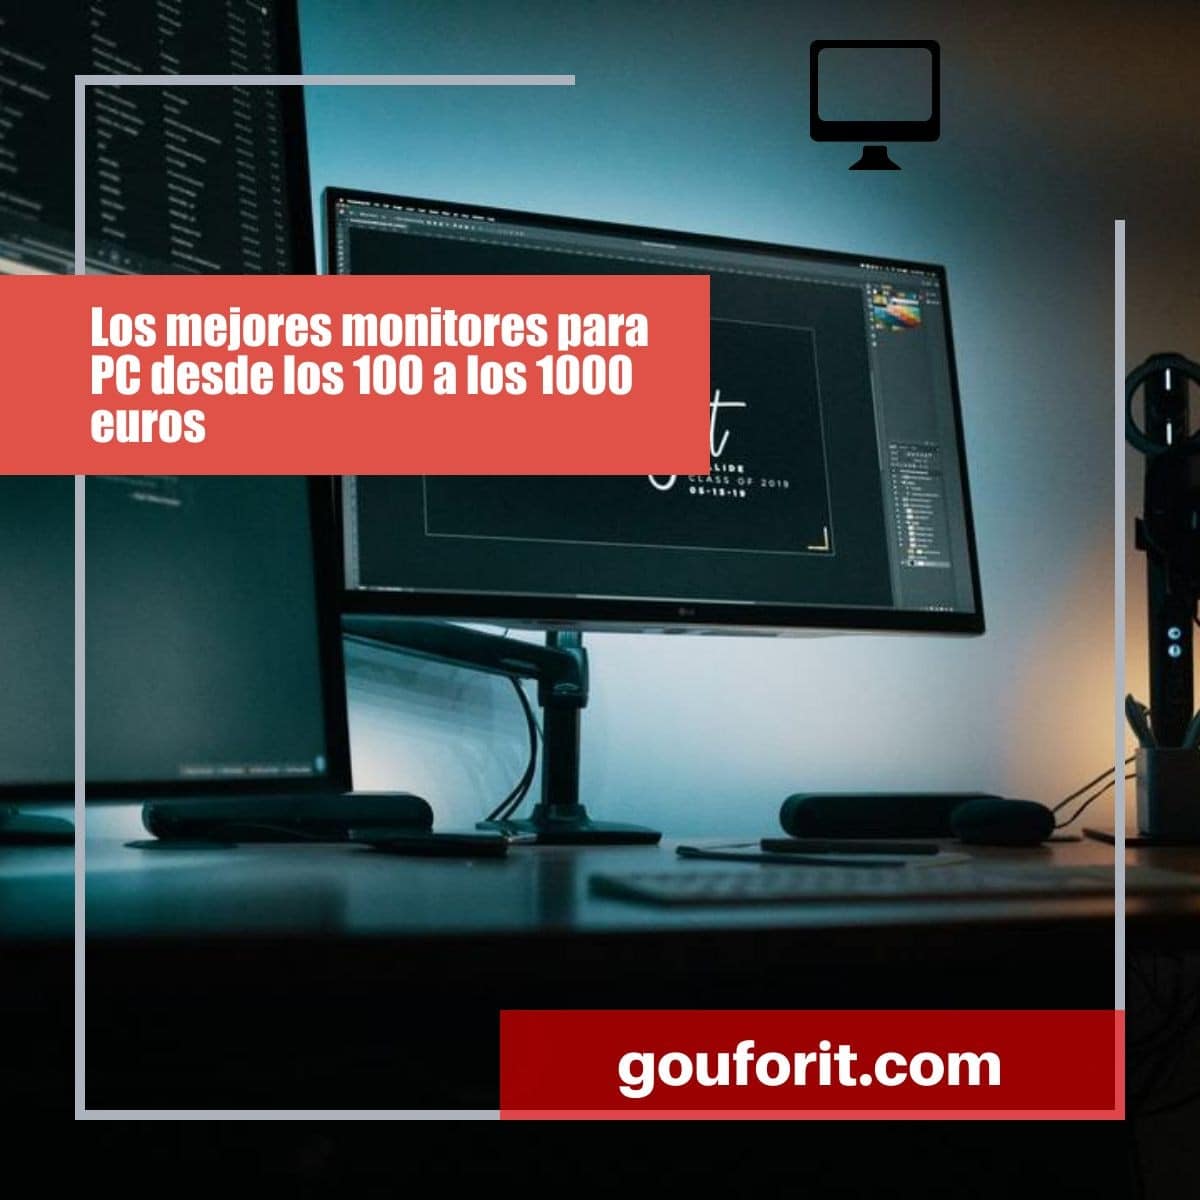 Los mejores monitores para PC desde los 100 a los 1000 euros